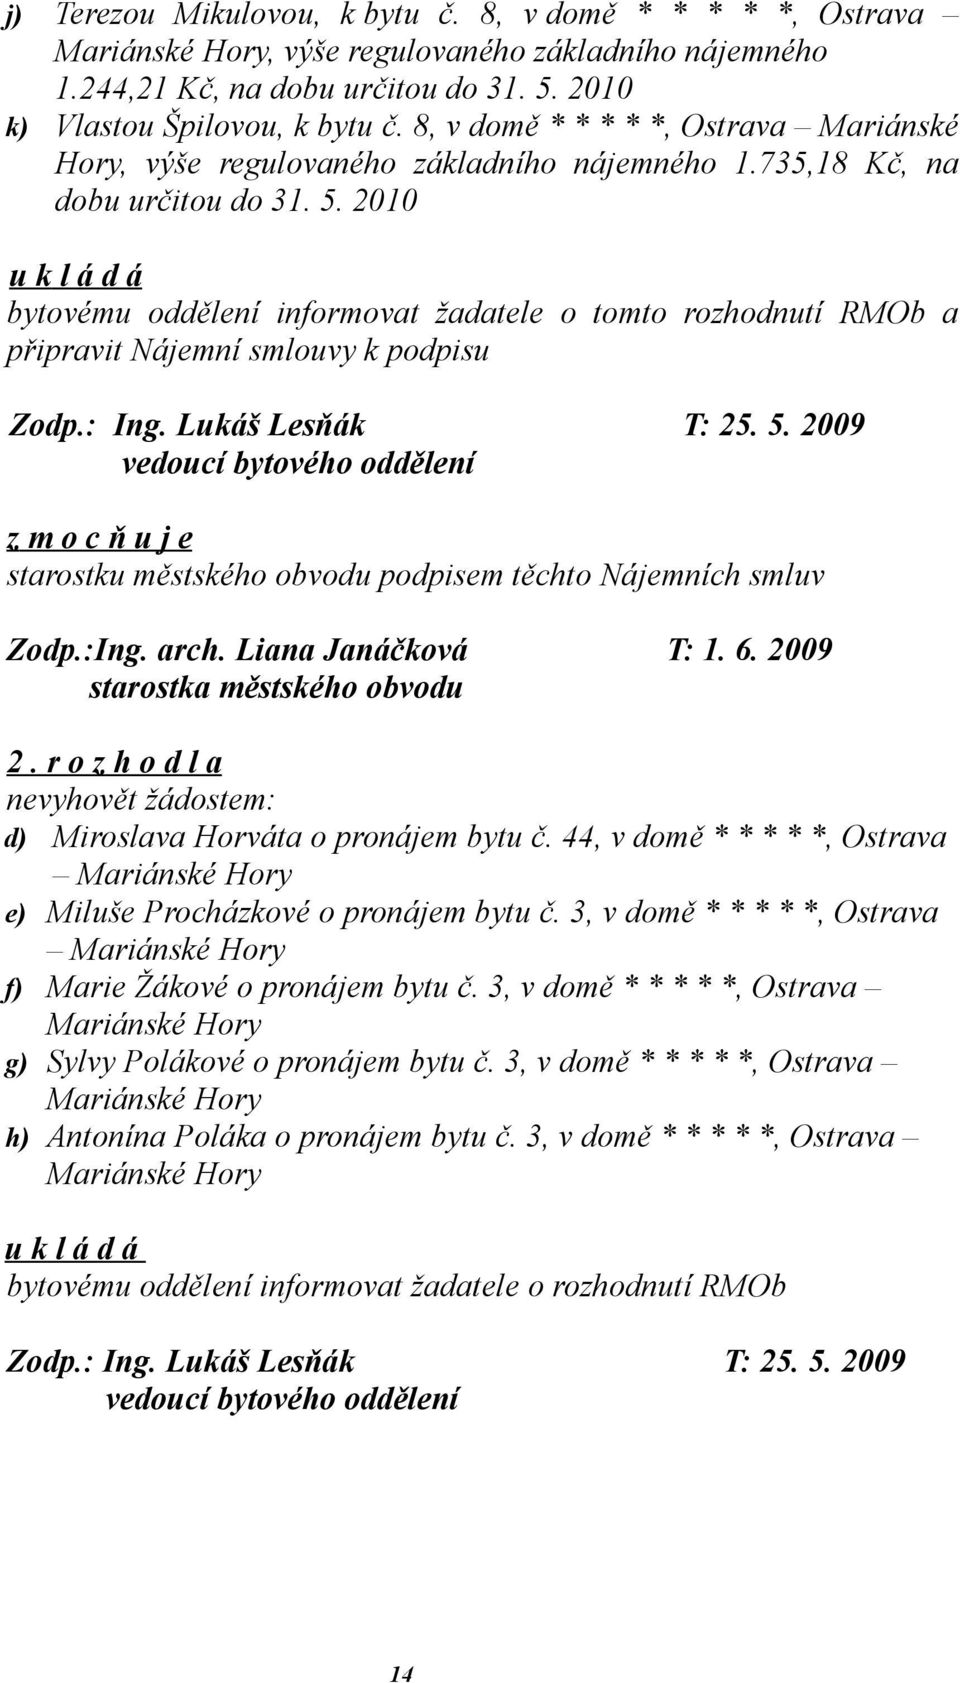 2010 bytovému oddělení informovat žadatele o tomto rozhodnutí RMOb a připravit Nájemní smlouvy k podpisu Zodp.: Ing. Lukáš Lesňák T: 25. 5.